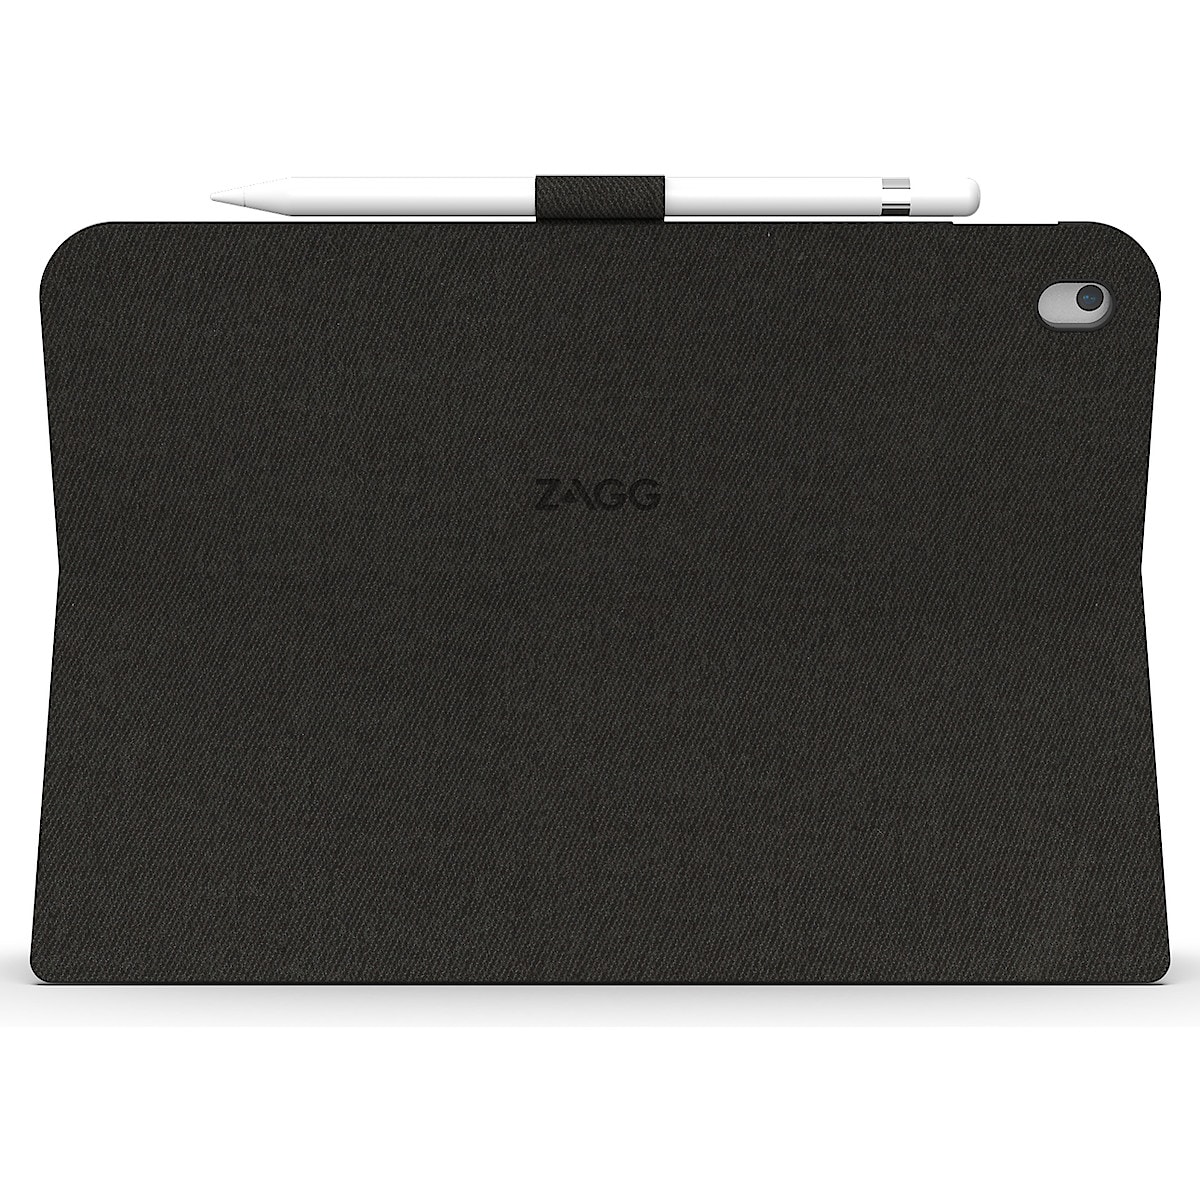 Zagg Messenger Folio etui med tastatur til iPad 10.2 